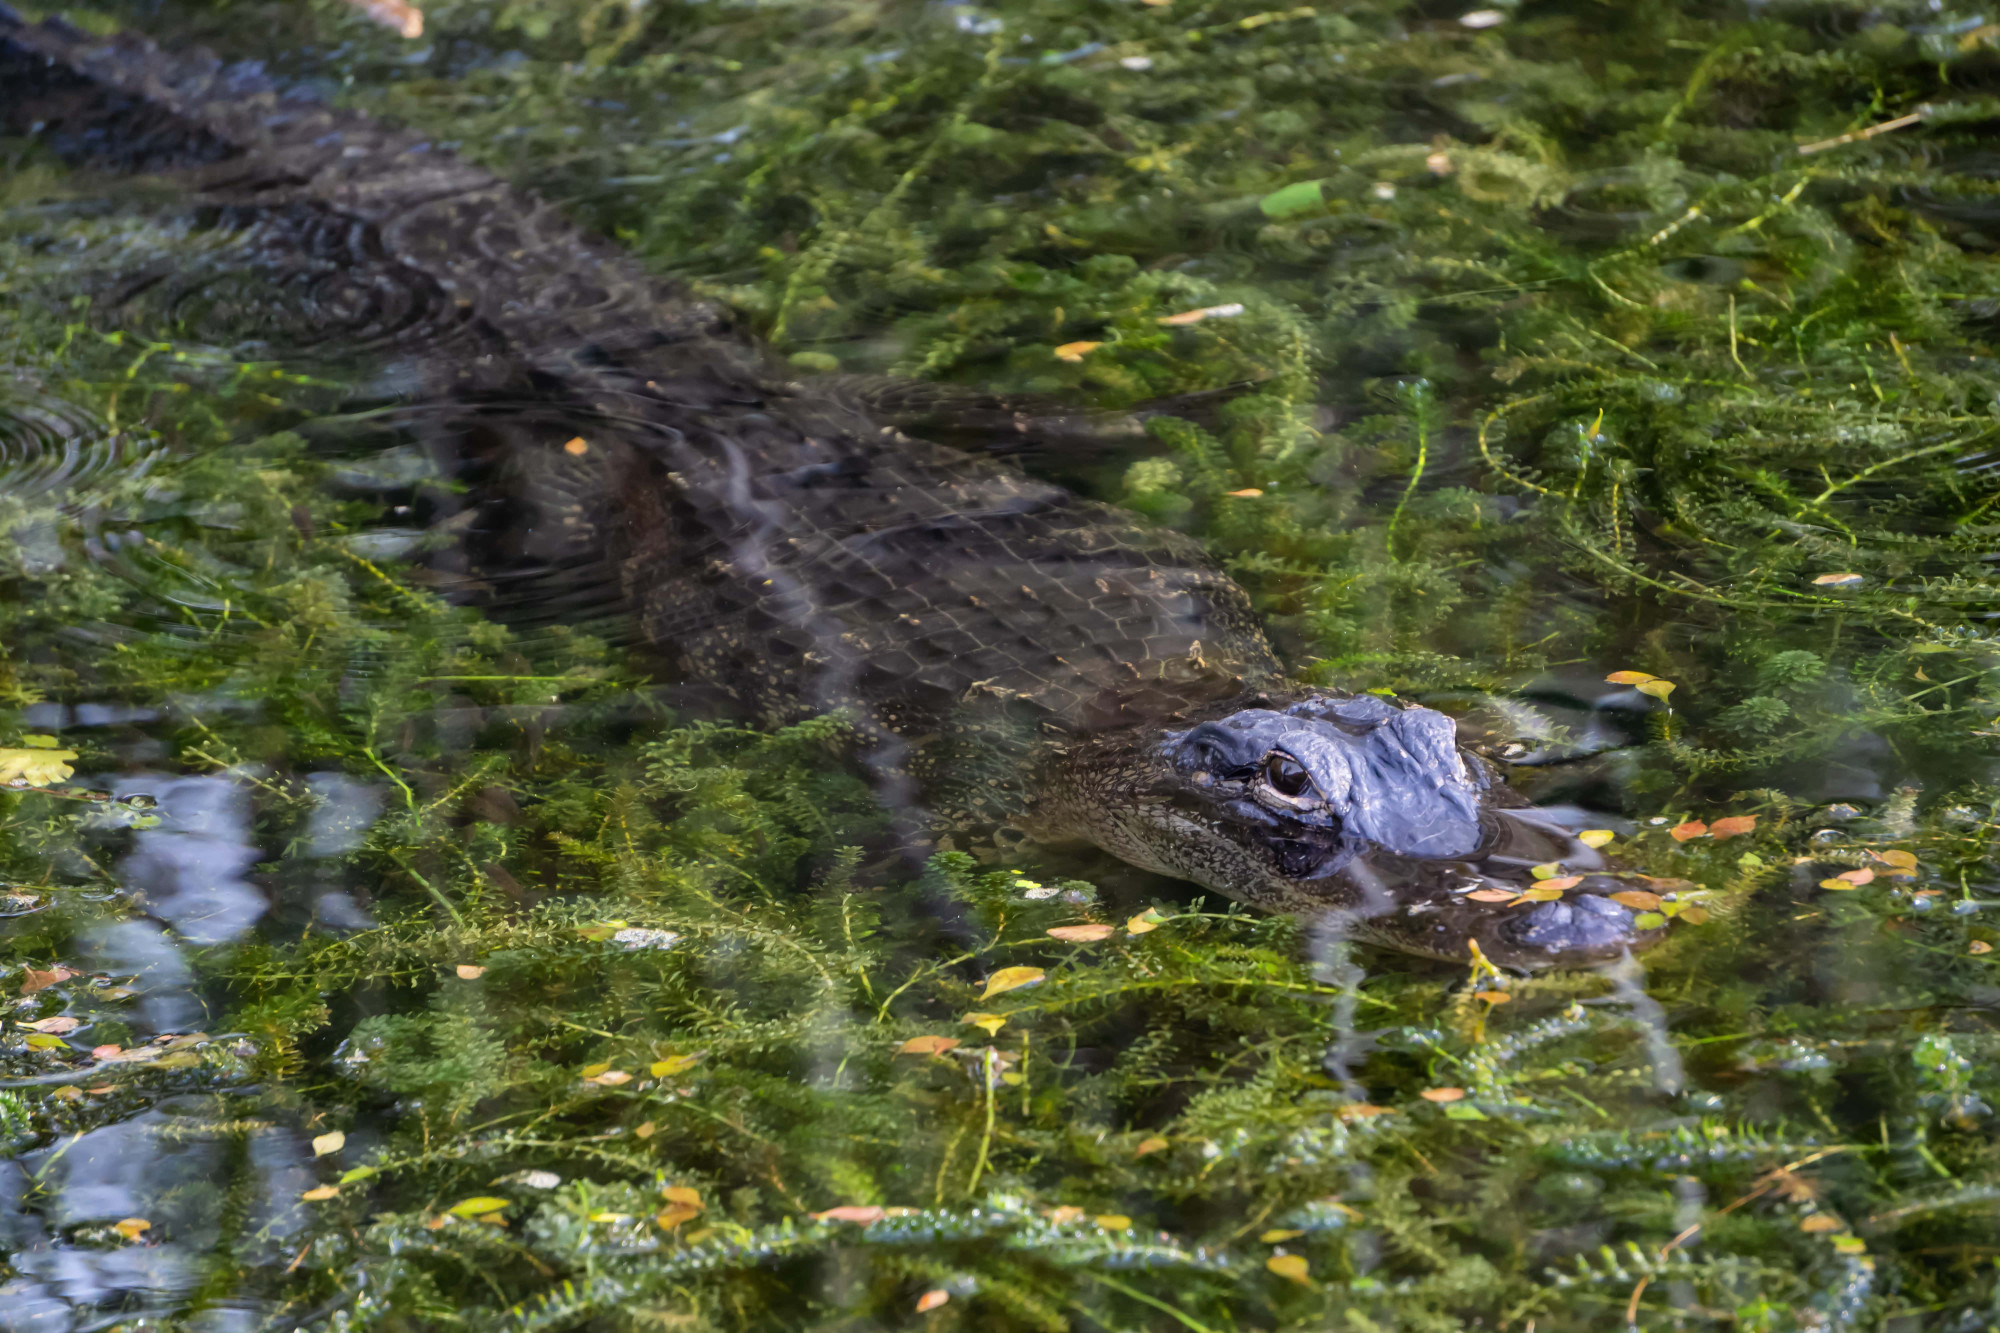 floriad everglades alligator